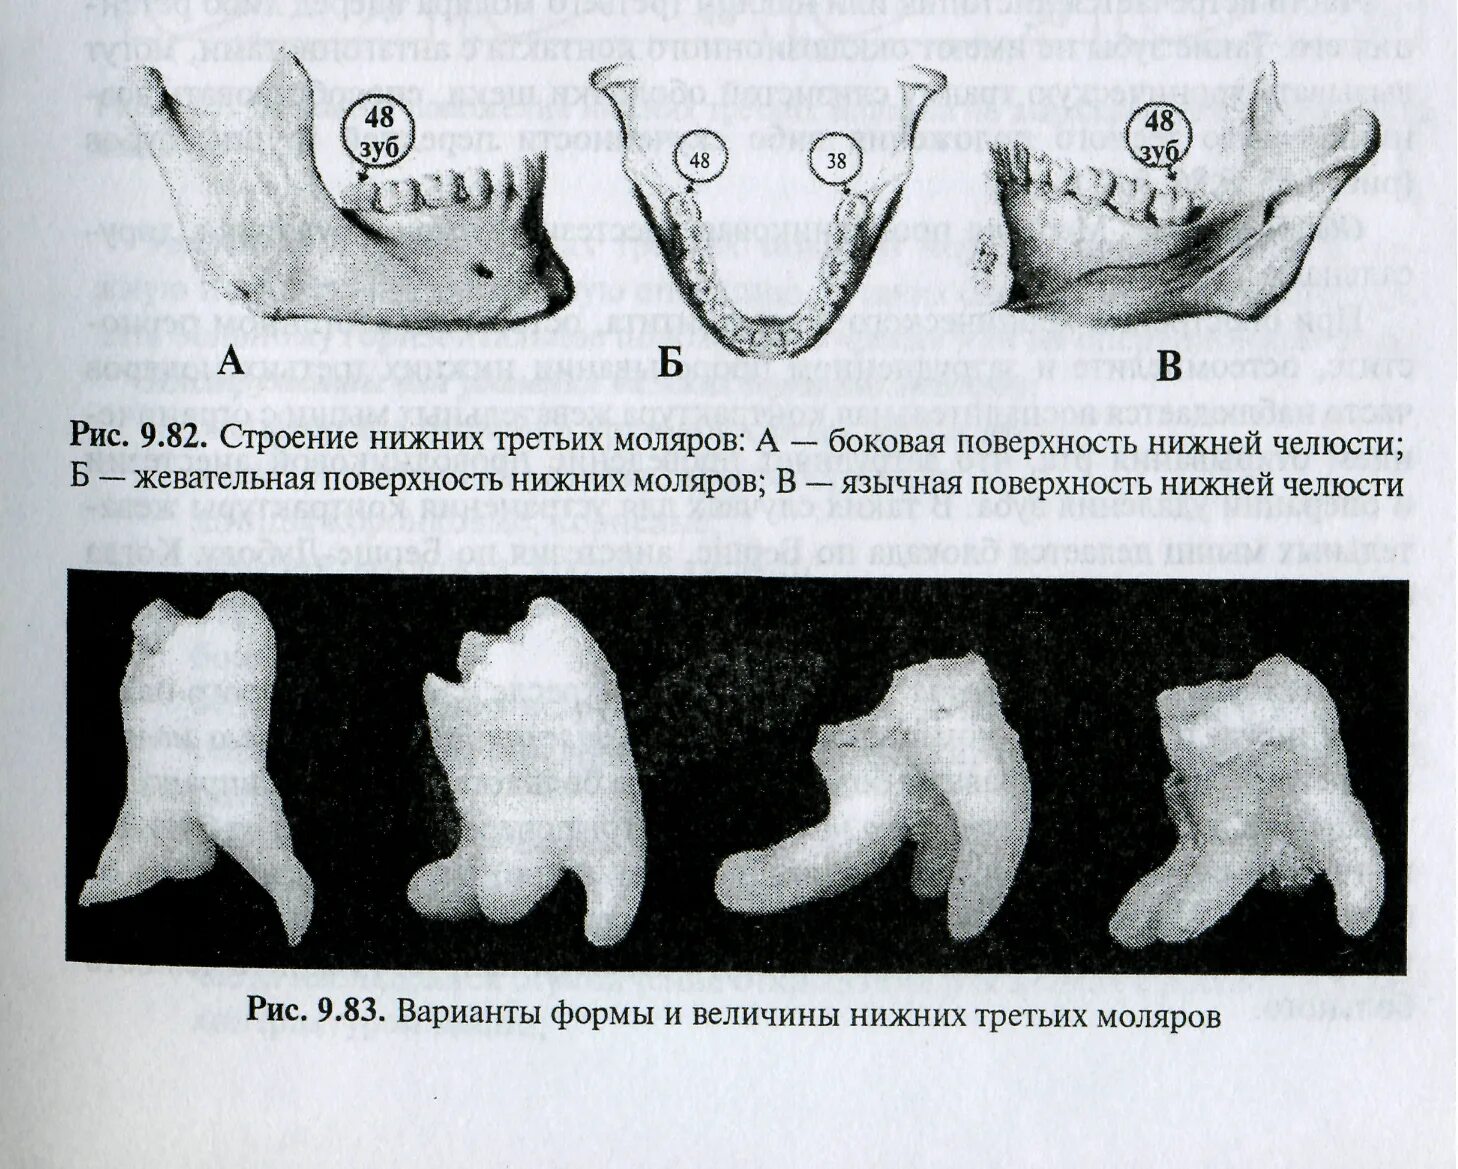 3 5 8 зуб. Анатомия зуба моляра нижней челюсти. Анатомия премоляров нижней челюсти. Третий Нижний моляр анатомия. Третьи моляры нижней челюсти.